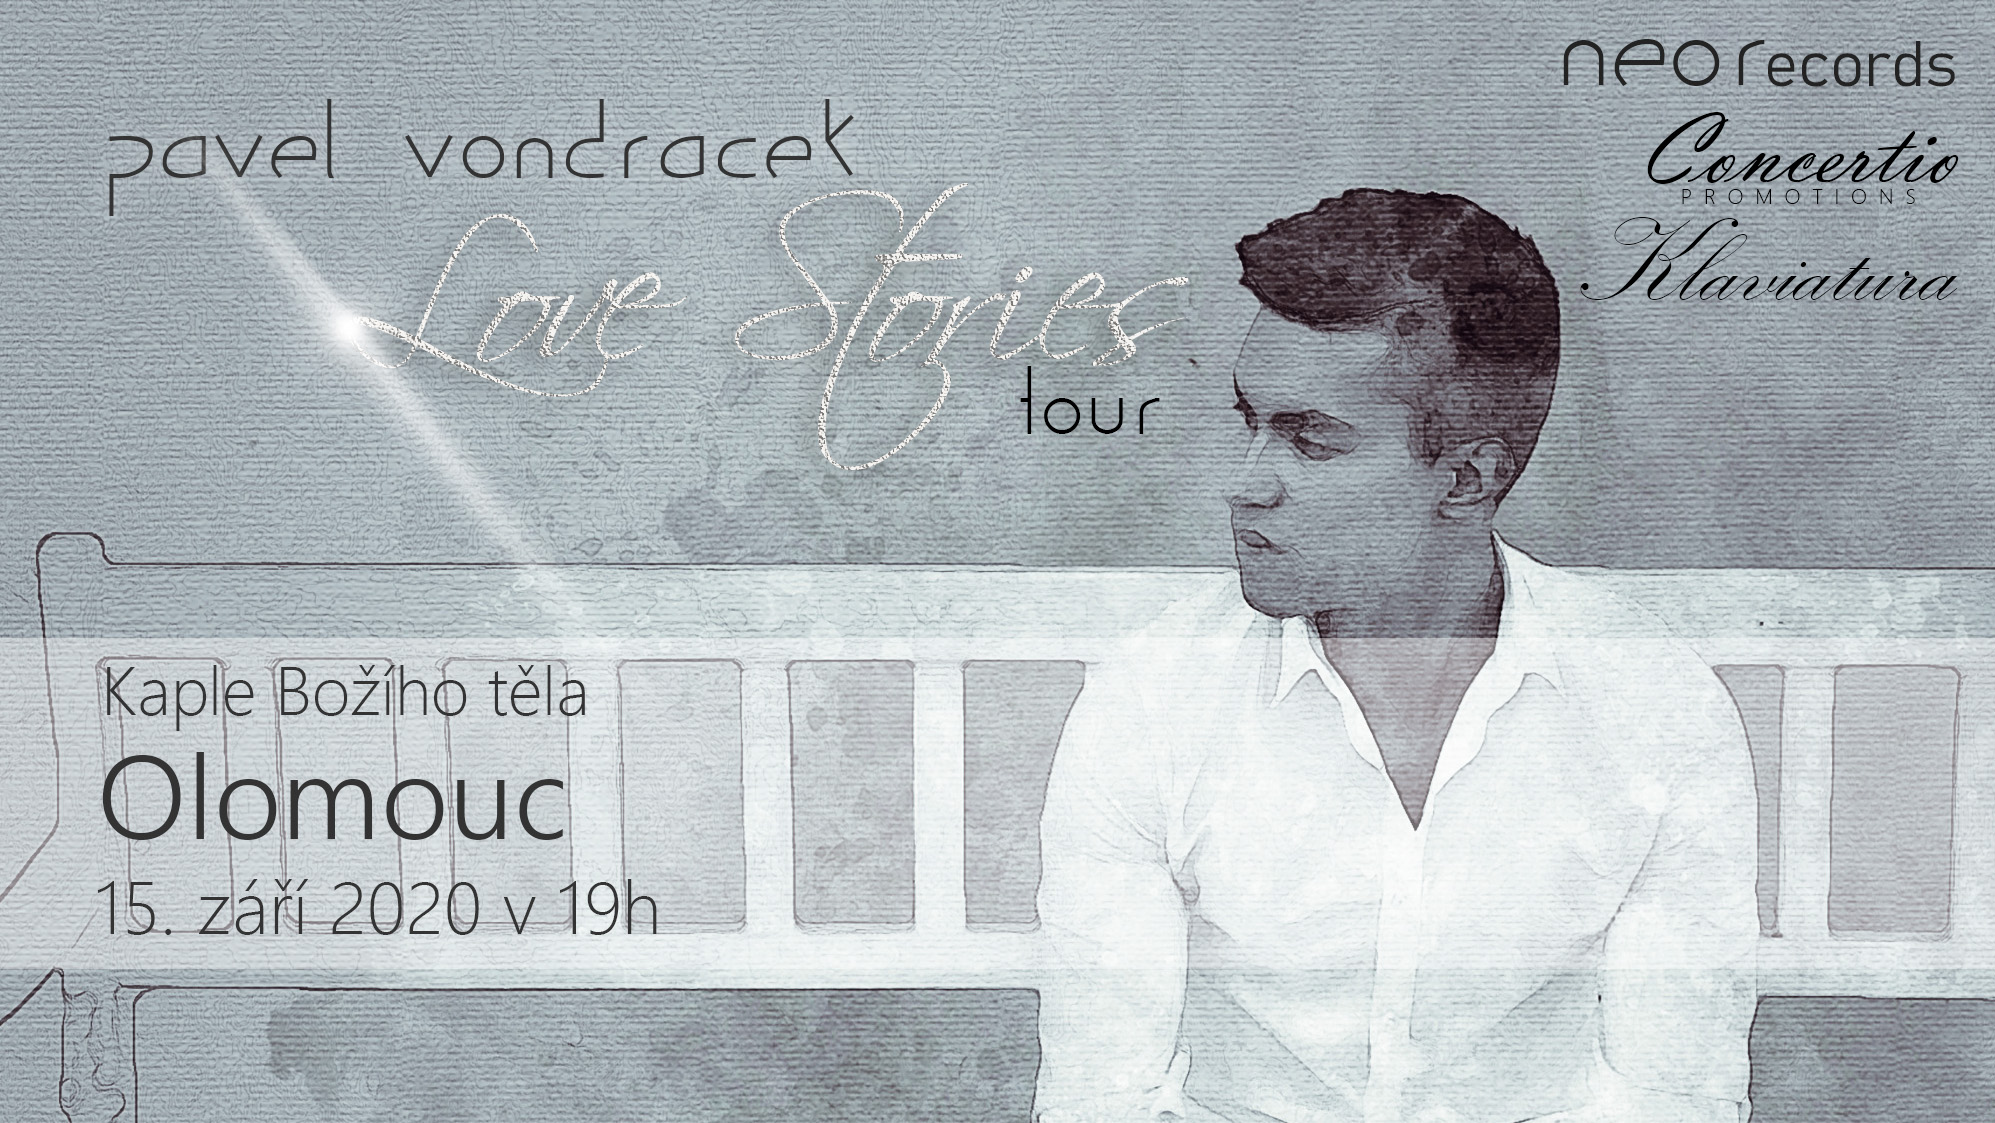 Pavel Vondráček - Love Stories Tour - koncert v Brně -Místodržitelský palác, Moravské nám. 680, Brno